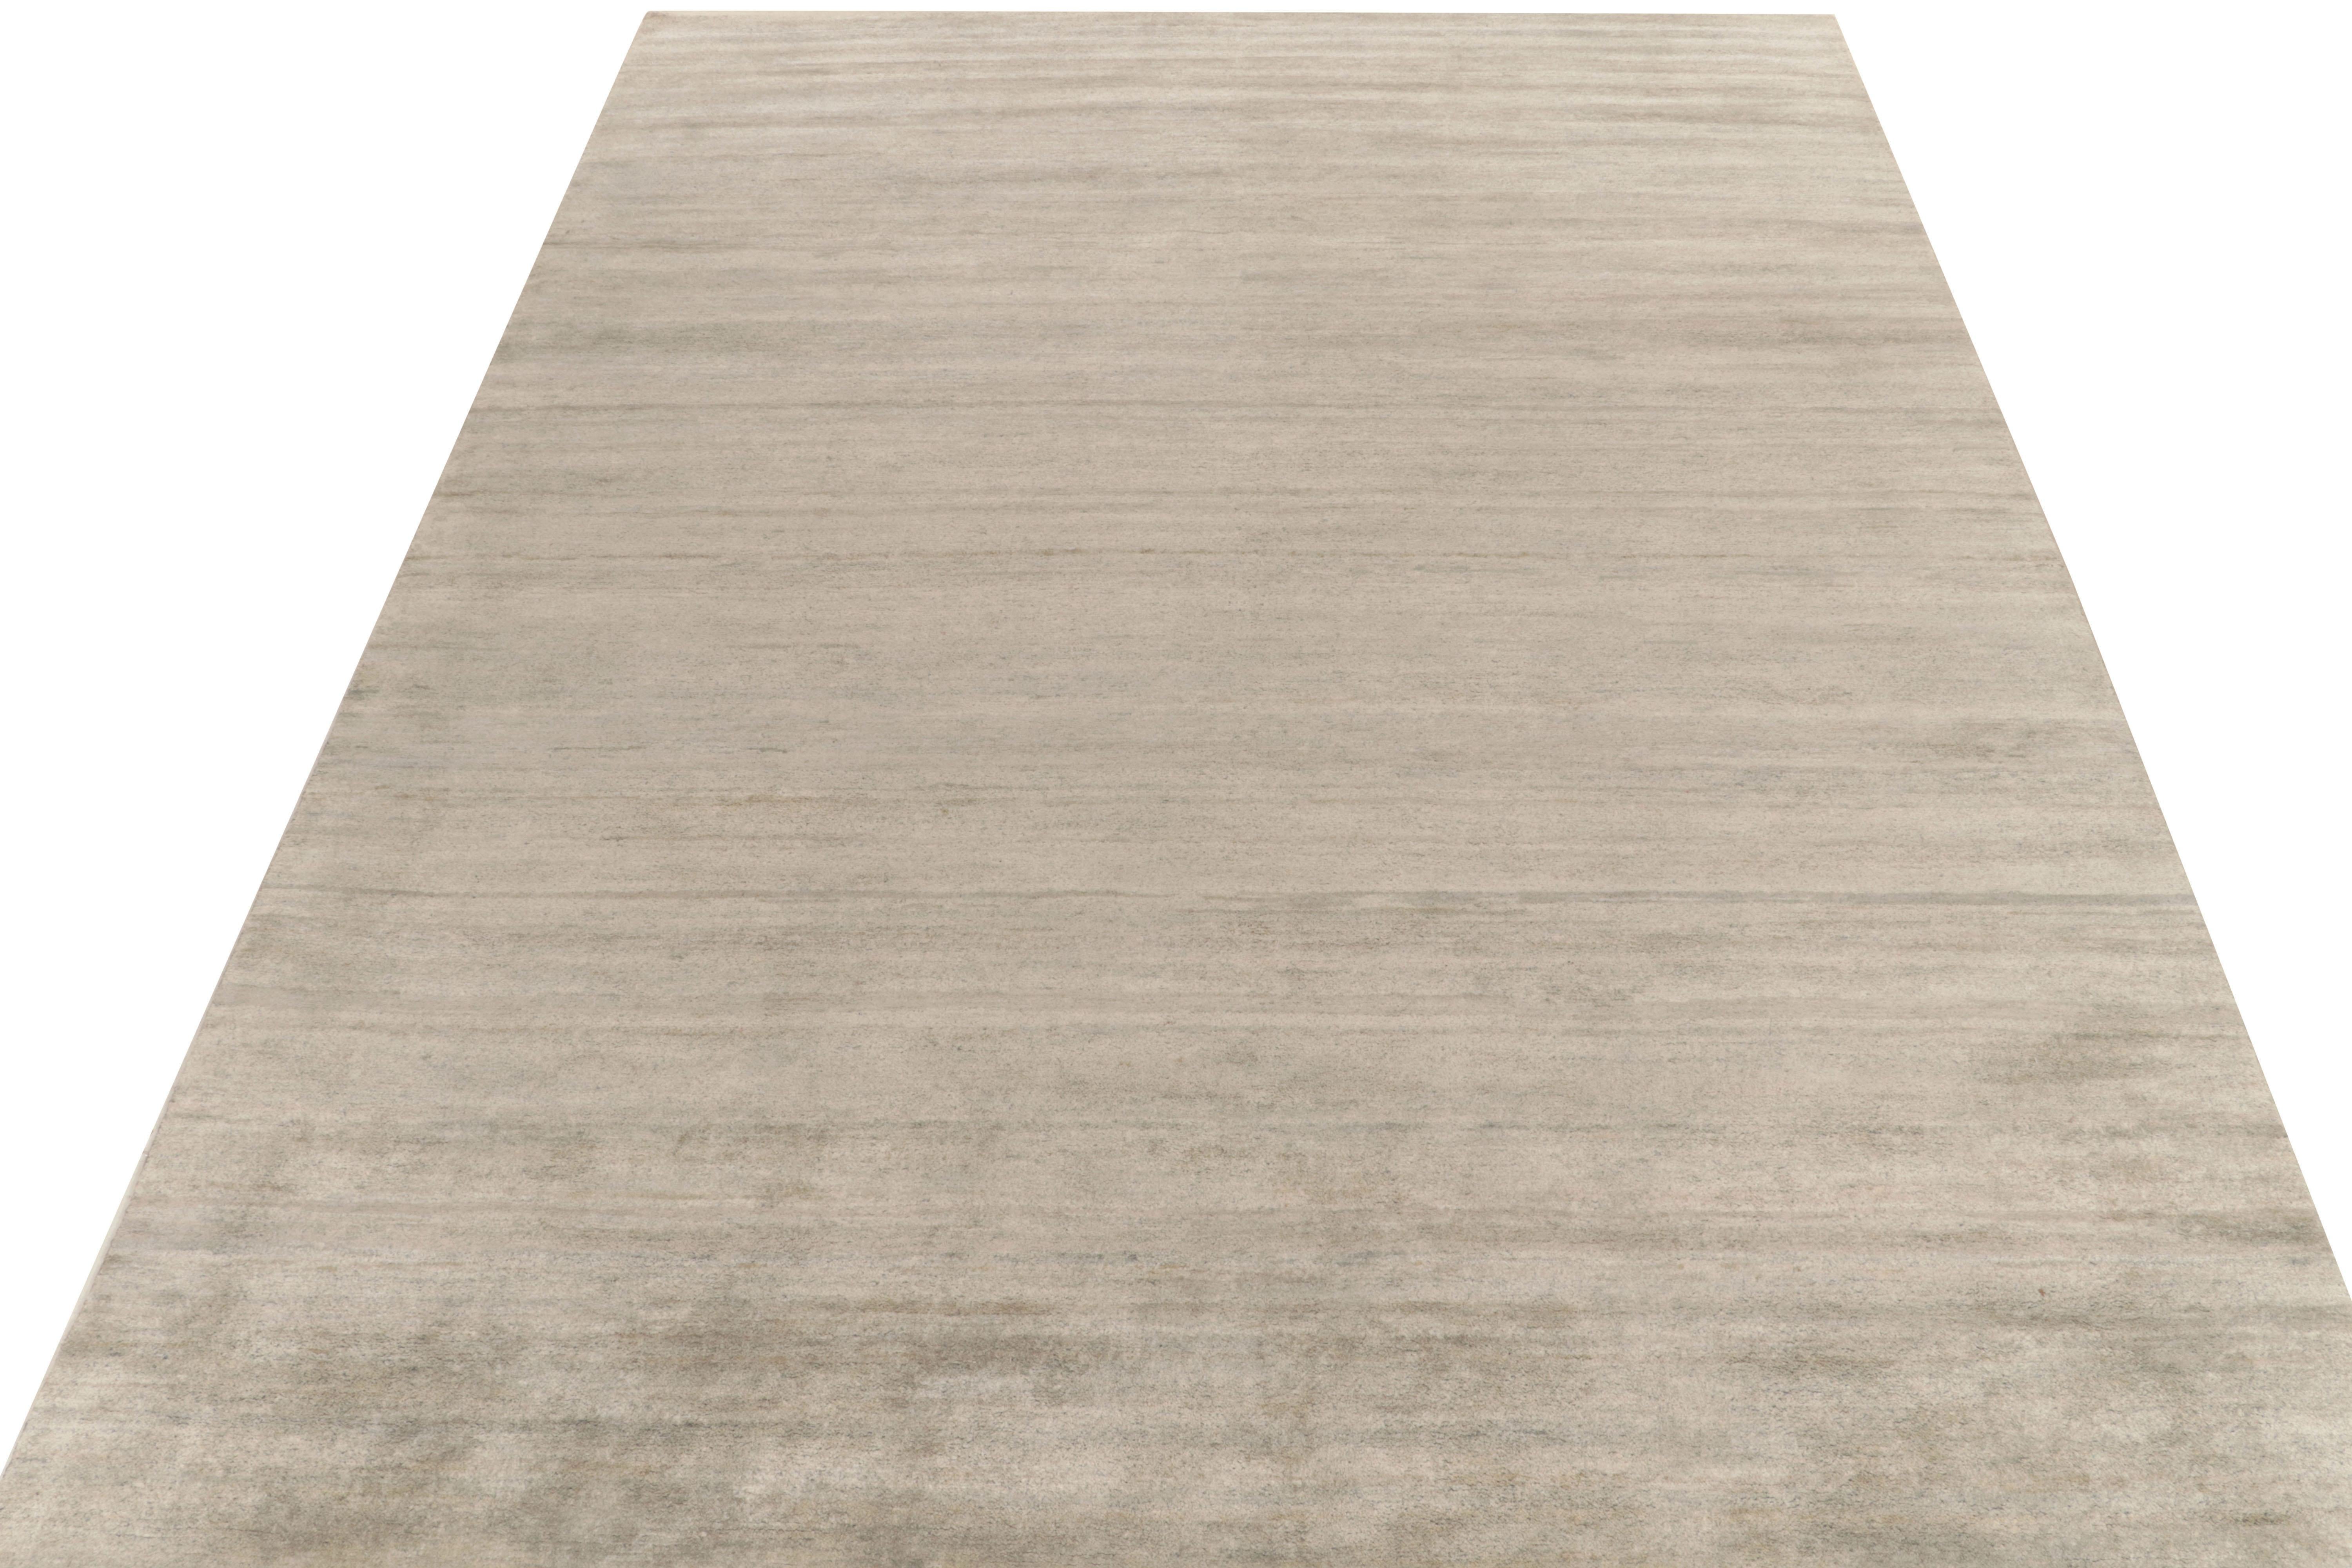 Rug & Kilim präsentiert seine raffinierte Interpretation moderner Ästhetik mit diesem eleganten, unifarbenen grauen Teppich in 10x14 aus unserer Texture of Color Kollektion. Das zeitgemäße Kleidungsstück besticht durch eine ausgereifte Farbgebung